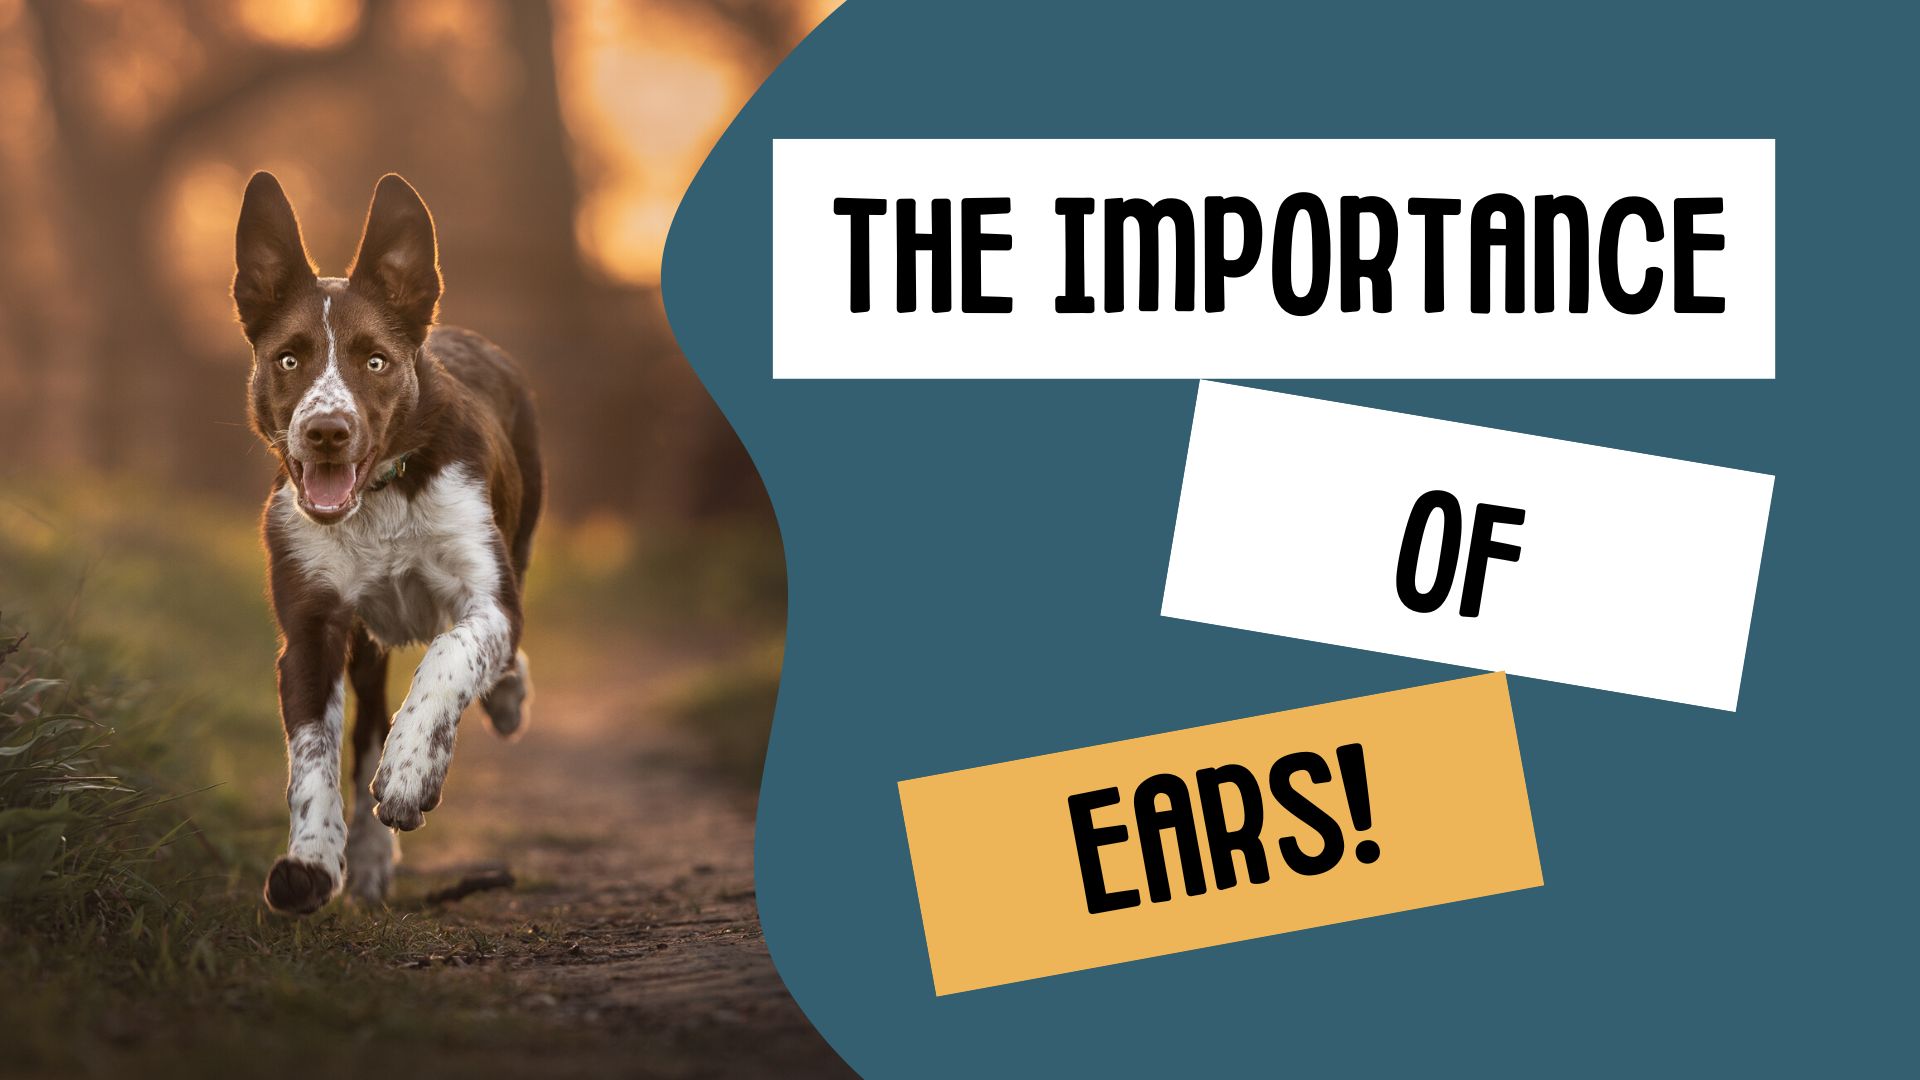 Ears!